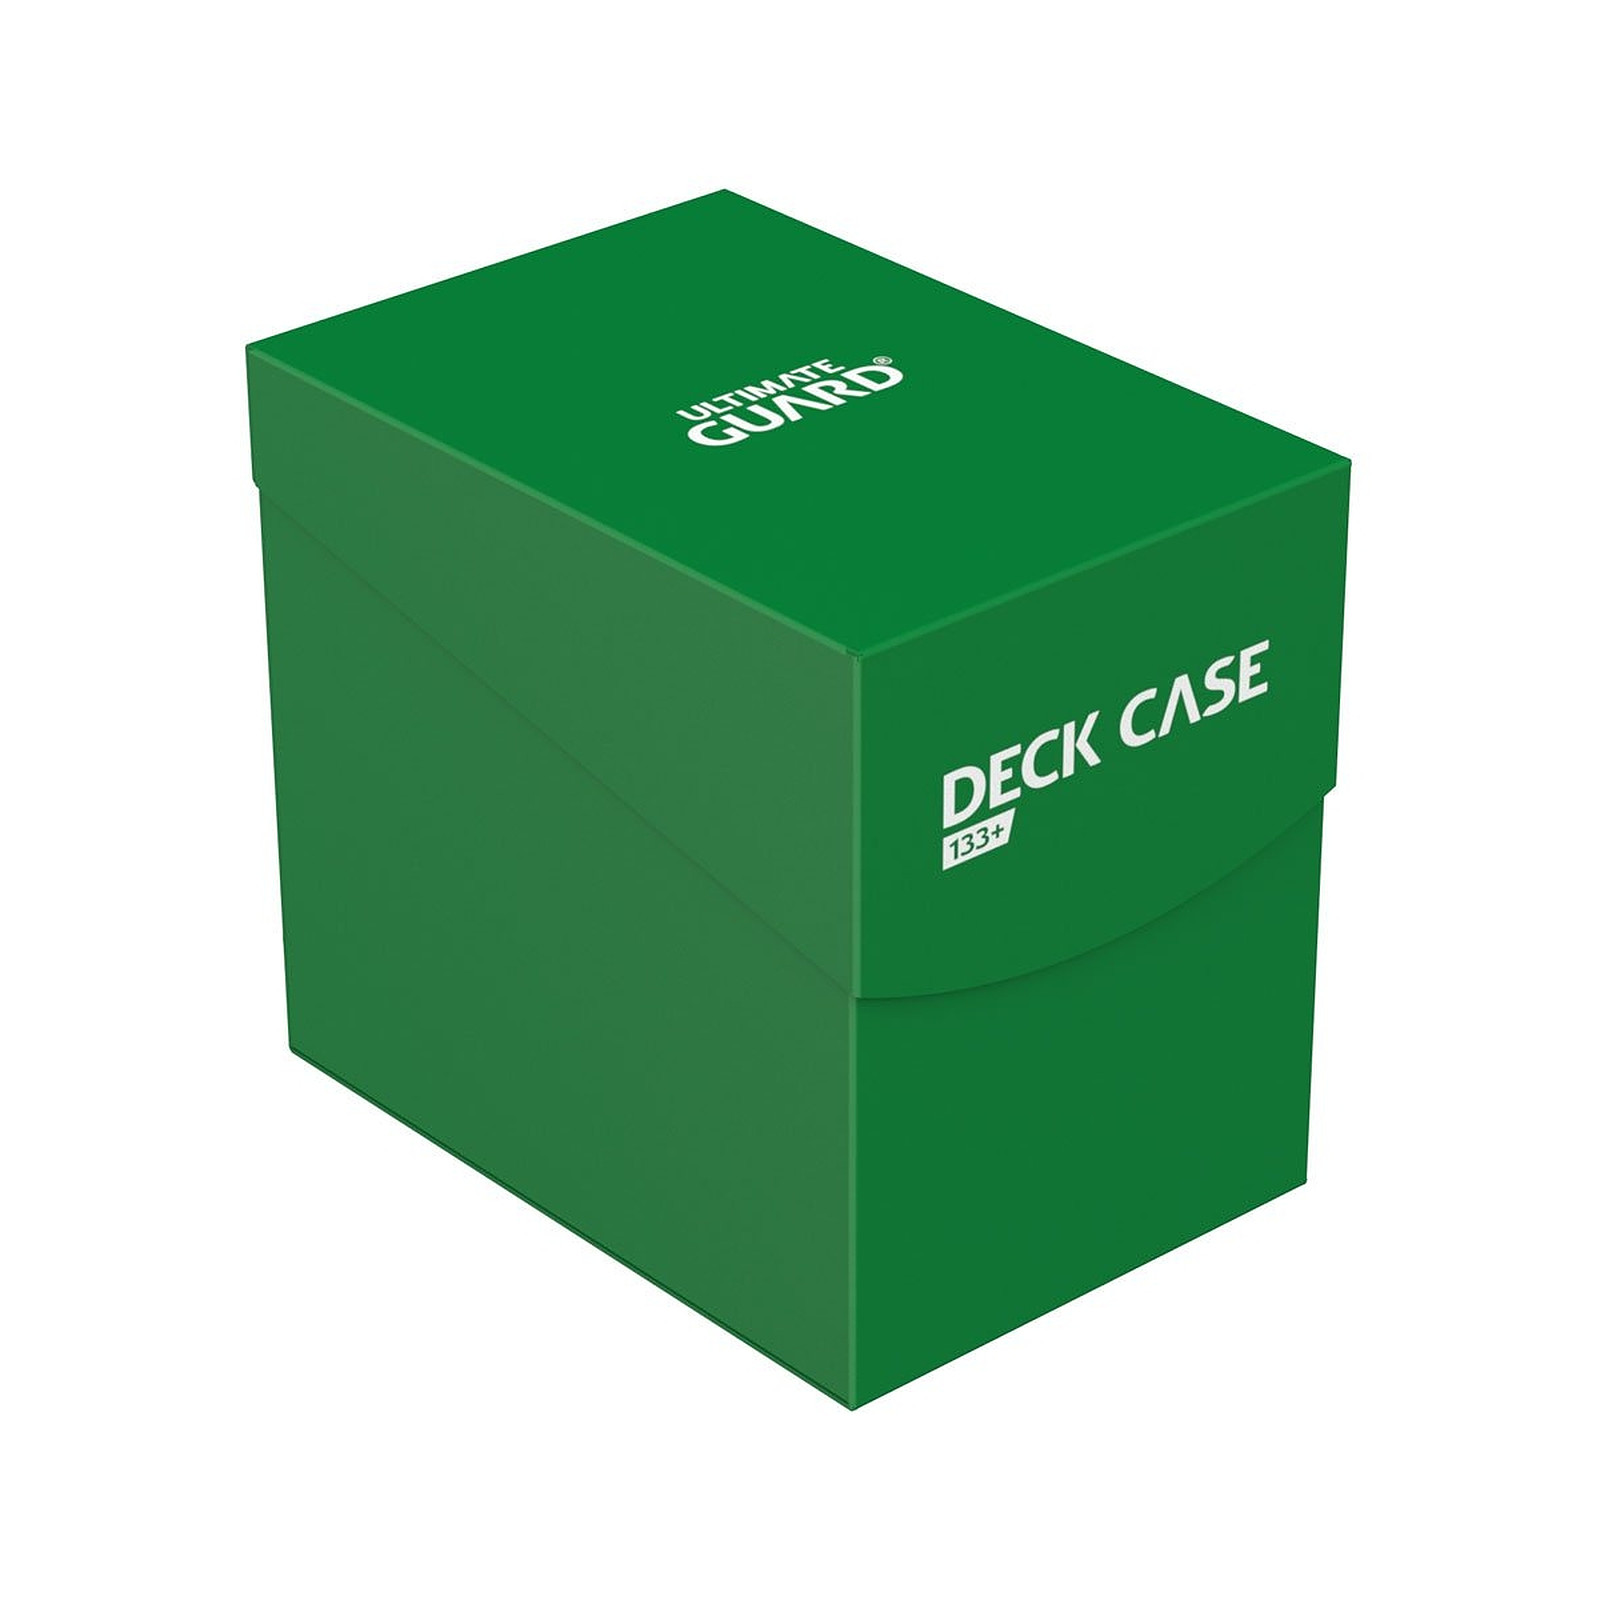 Ultimate Guard - Boite pour cartes Deck Case 133+ taille standard Vert - Accessoire jeux Ultimate Guard